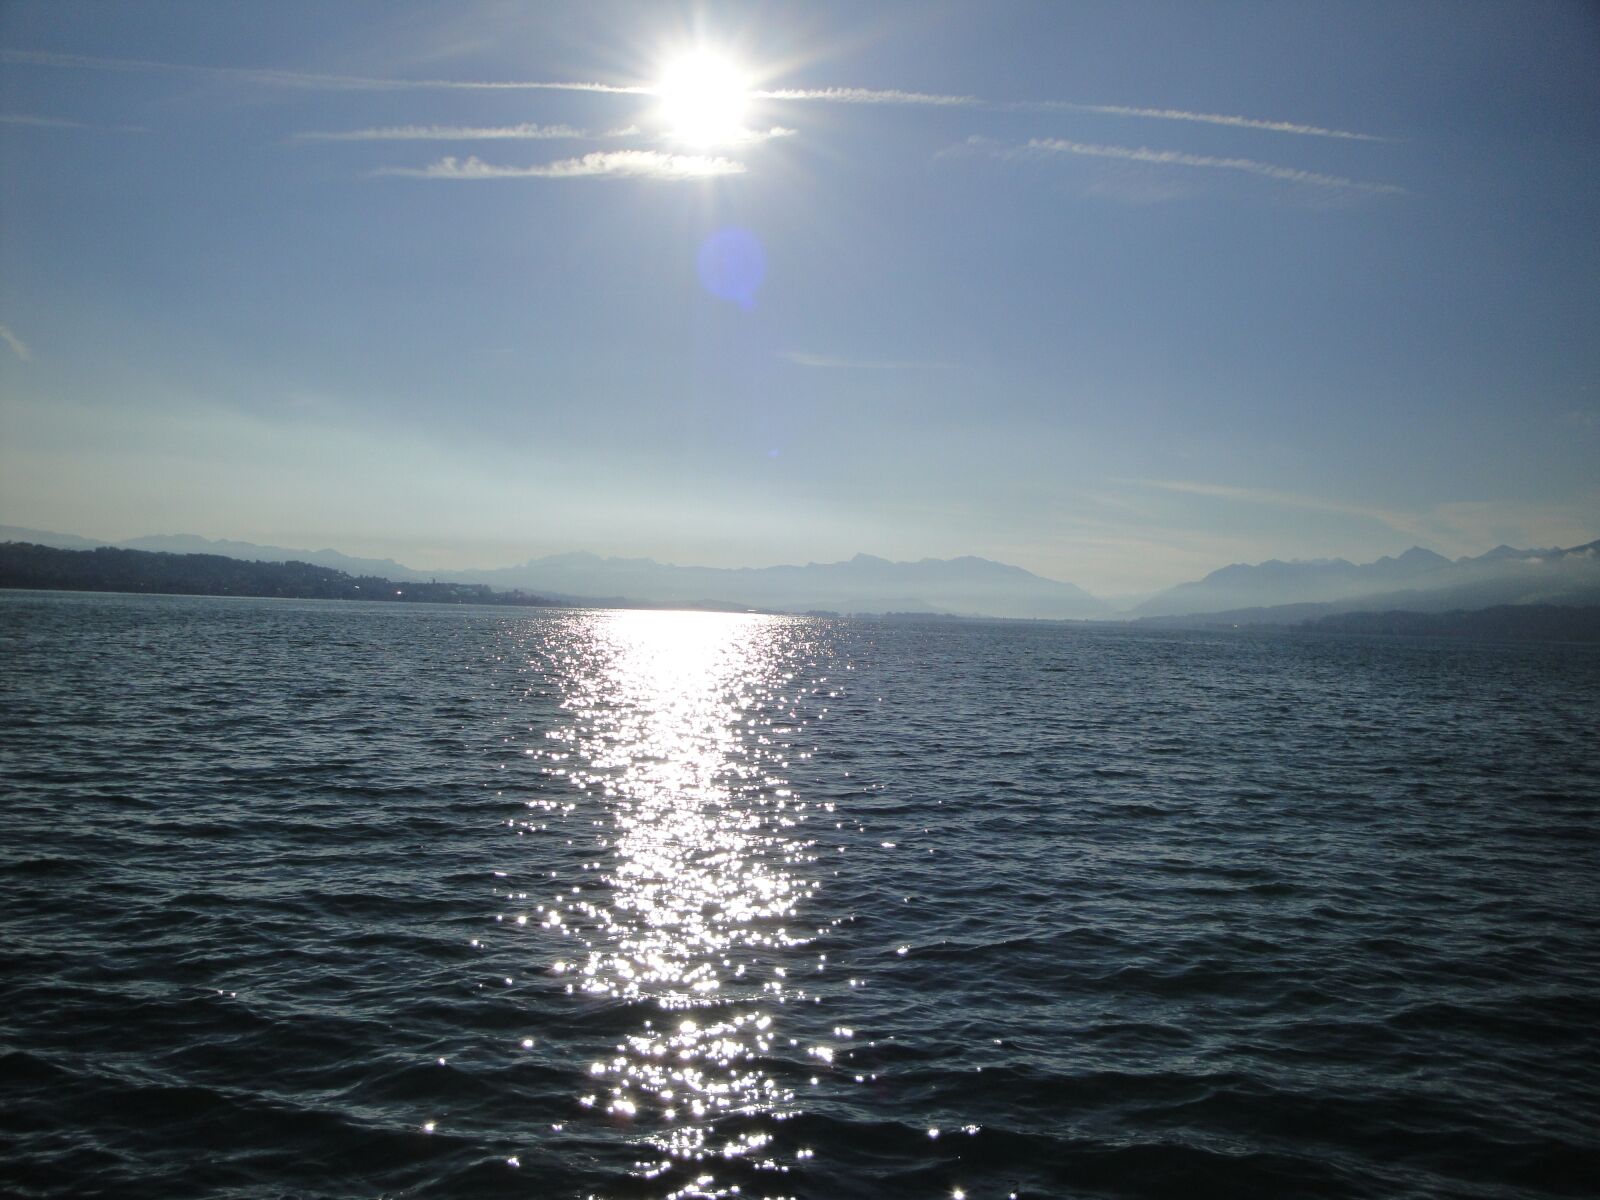 Sony Cyber-shot DSC-W290 sample photo. Lake, sun, water photography